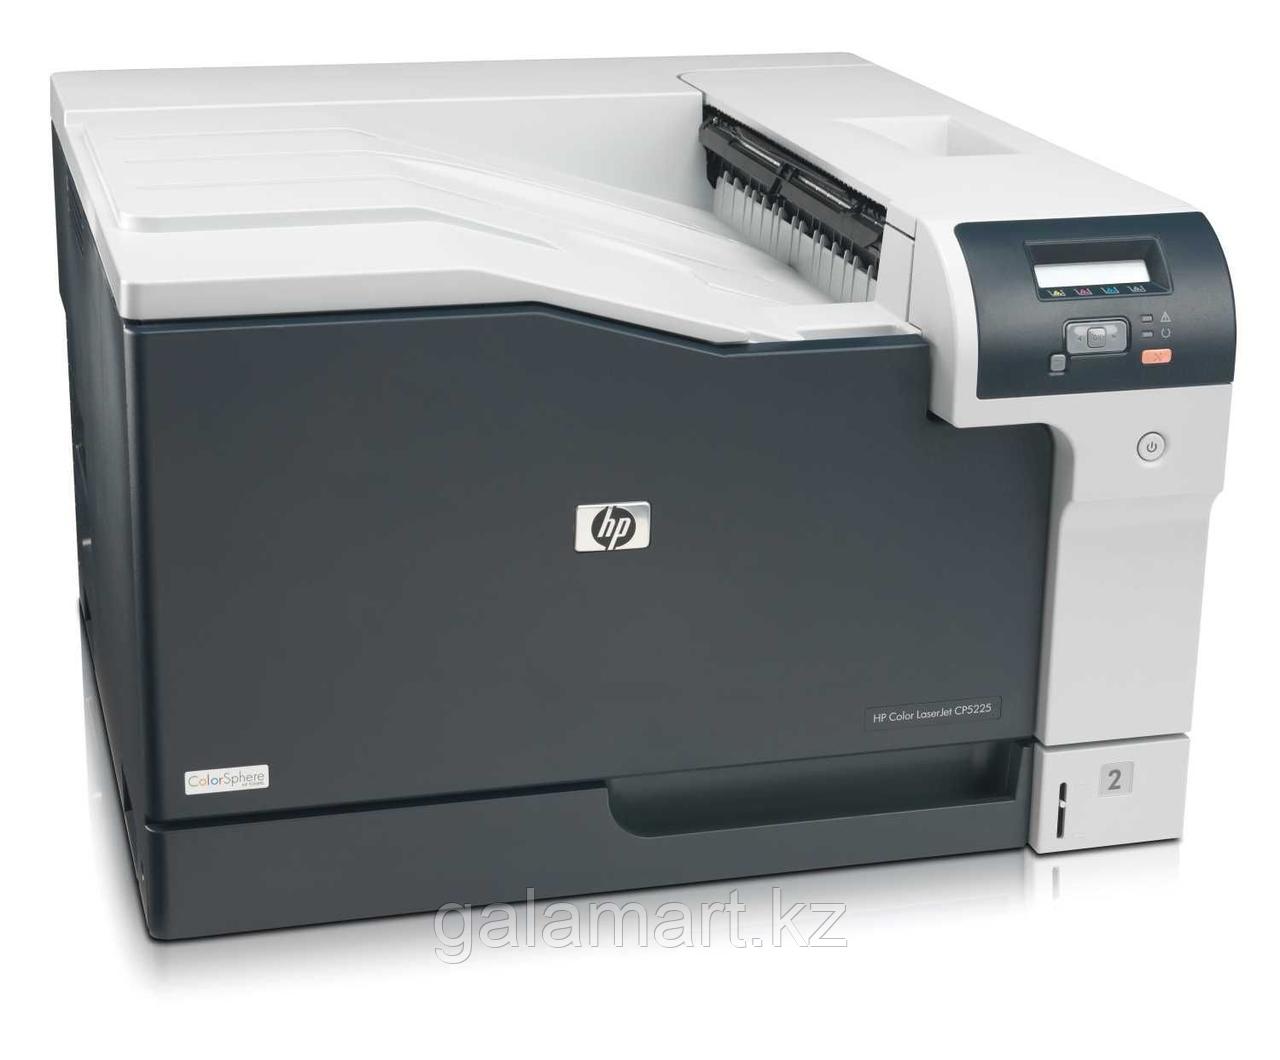 Принтер лазерный цветной HP CE710A Color LaserJet CP5225 (А3) 600 dpi, 20 ppm, 192MB, 540Mhz, USB 2.0 tray 100